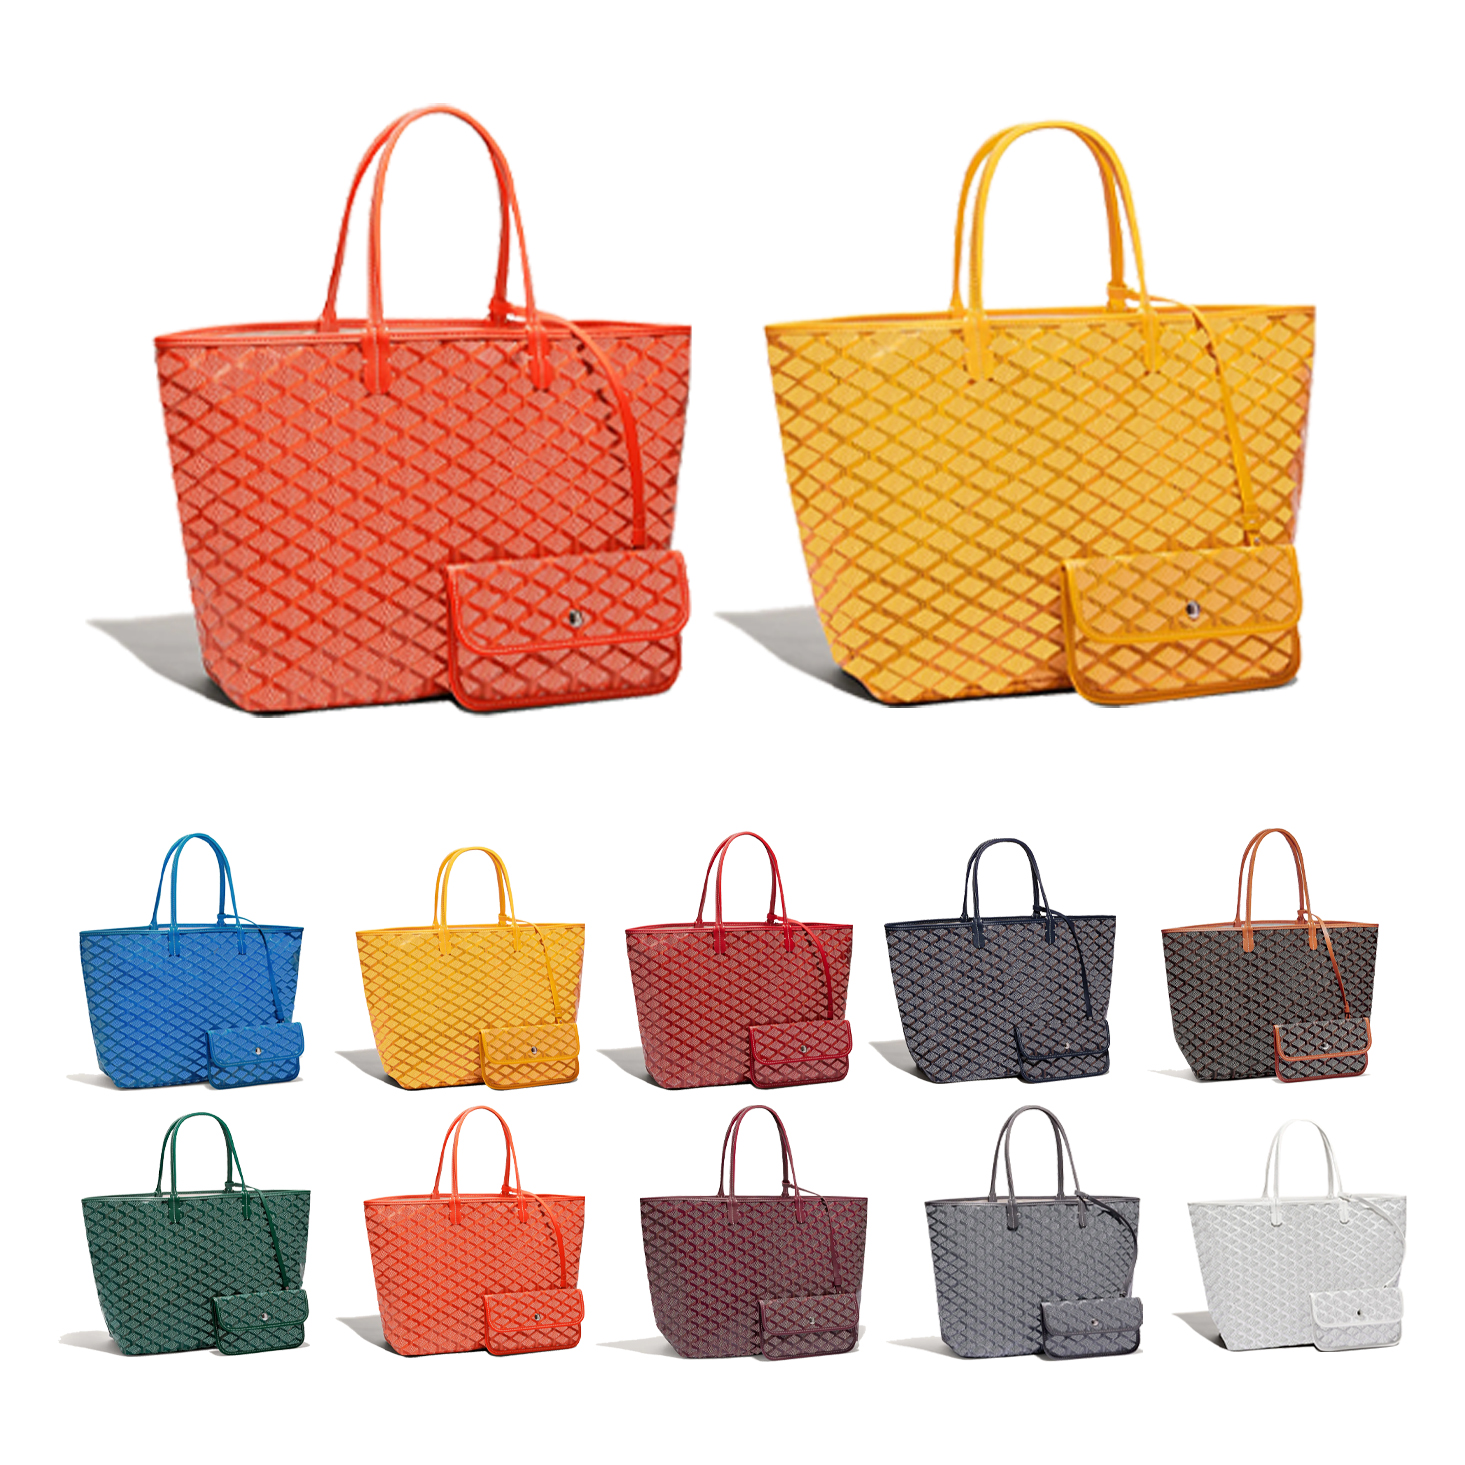 Высочайшее качество, роскошные дизайнерские сумки для покупок, женские сумки 3 размера для мамы PM GM CrossBody, клатч-тоут, мужская сумка для спортзала, натуральная кожа, дорожные сумки на плечо, кошелек и сумочка